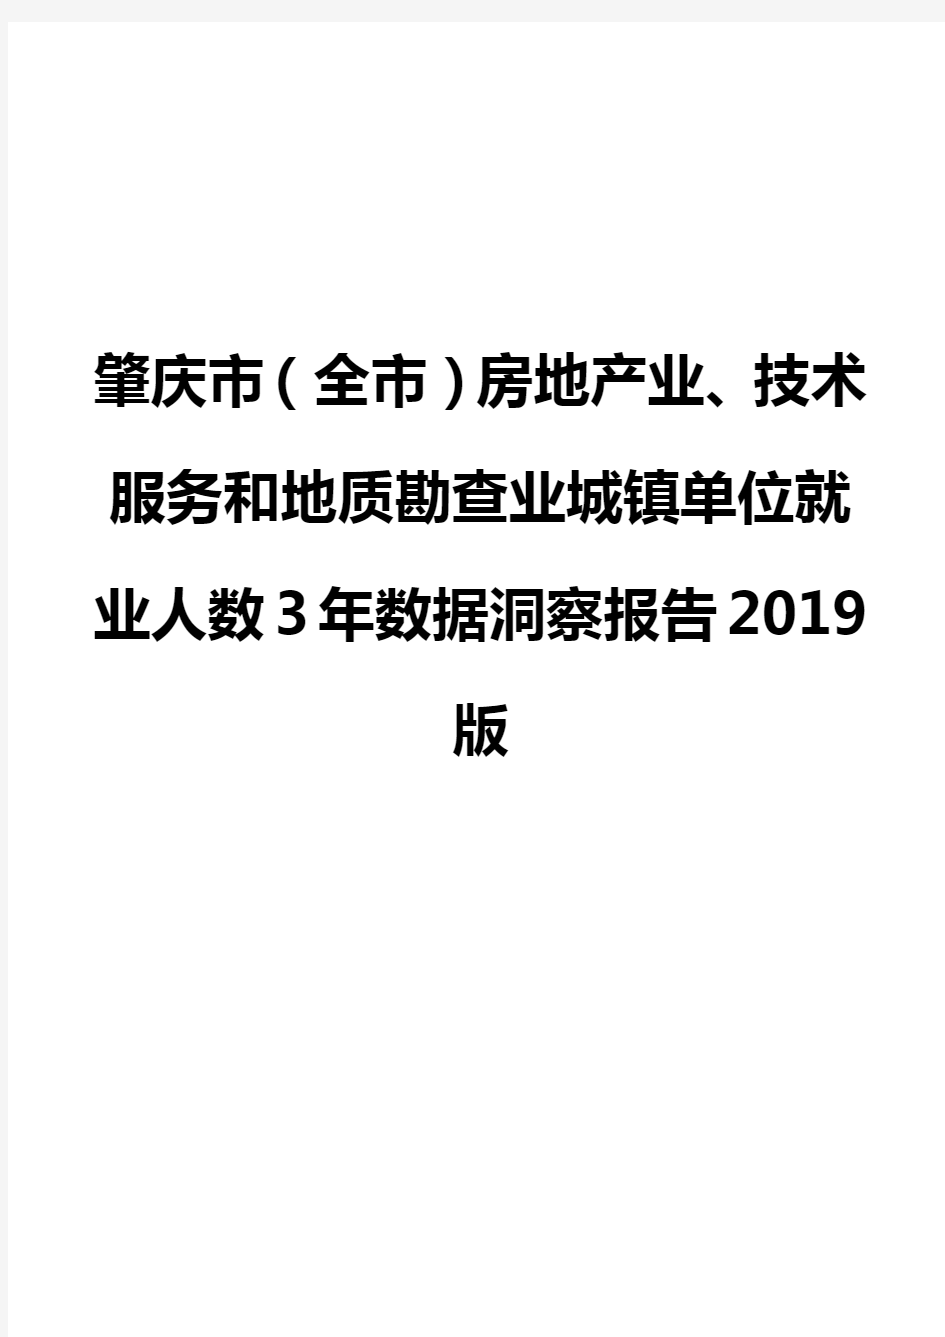 肇庆市(全市)房地产业、技术服务和地质勘查业城镇单位就业人数3年数据洞察报告2019版